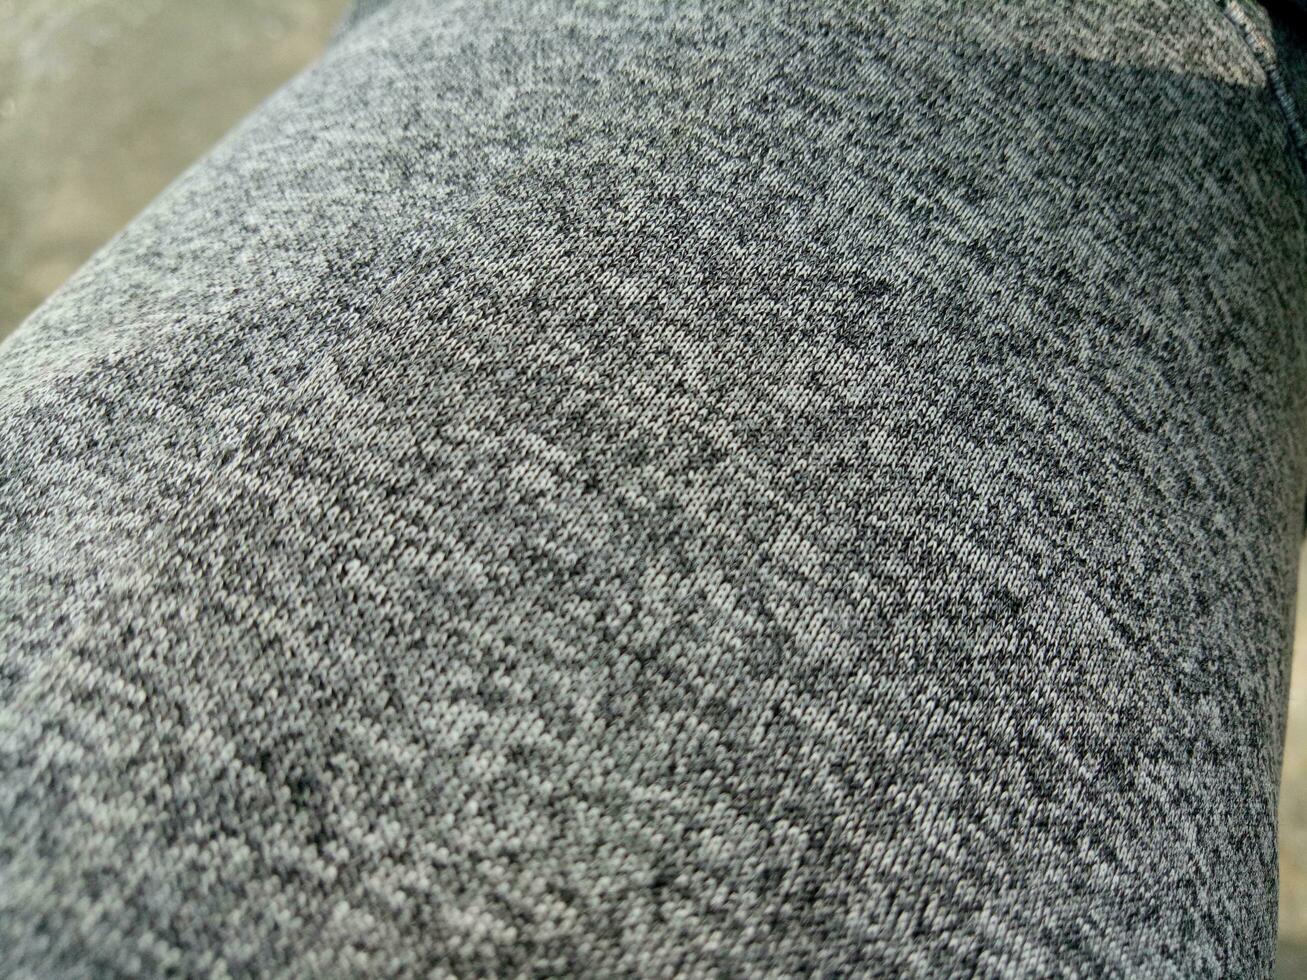 foto do a textura do uma cinzento moletom